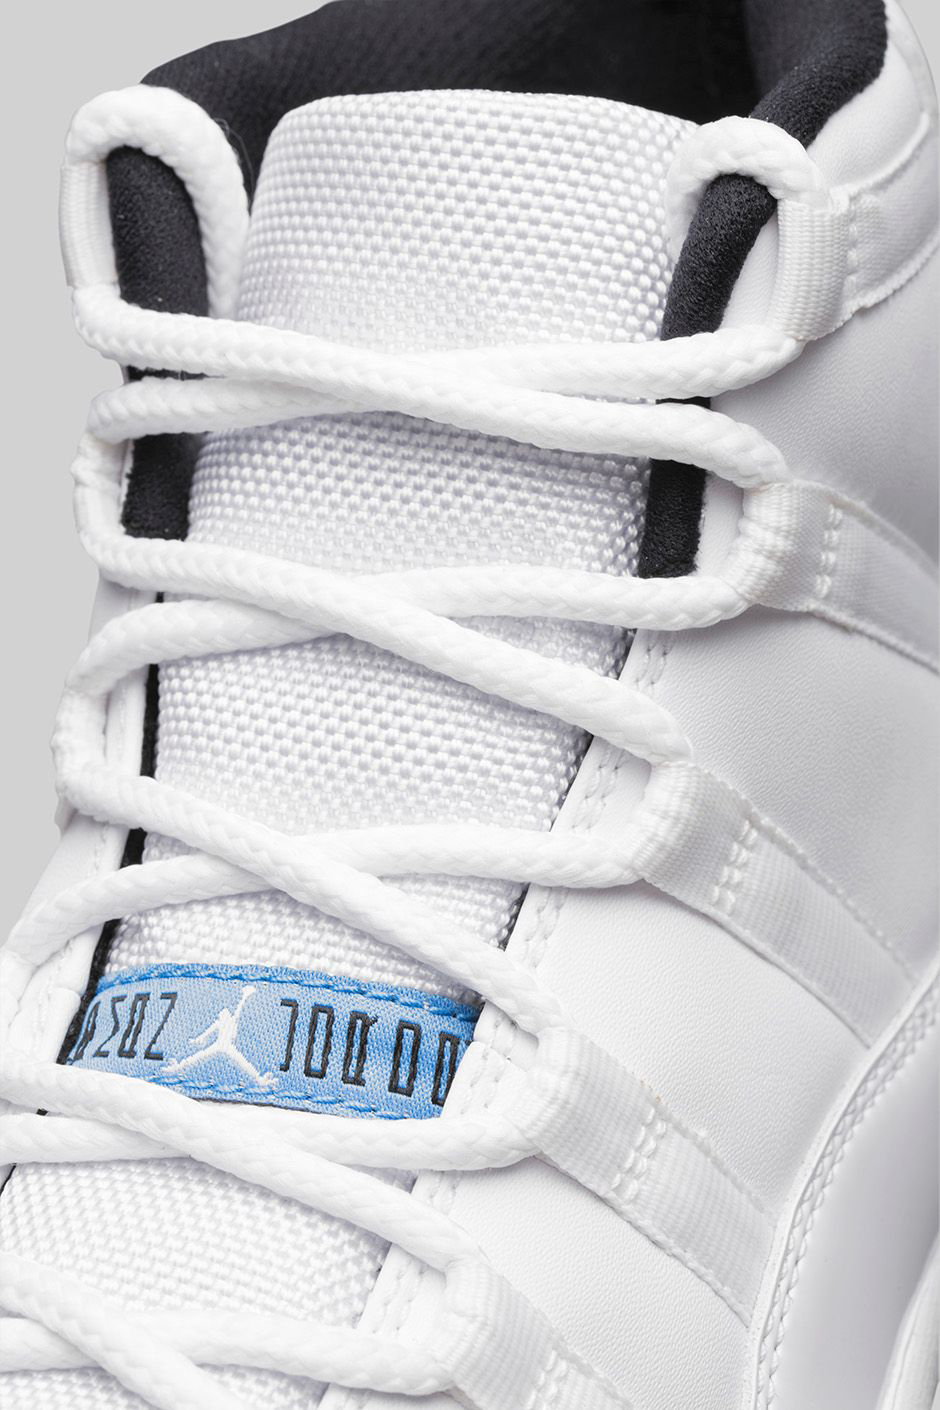 Air Jordan 11 Legend Blue Official Images 8